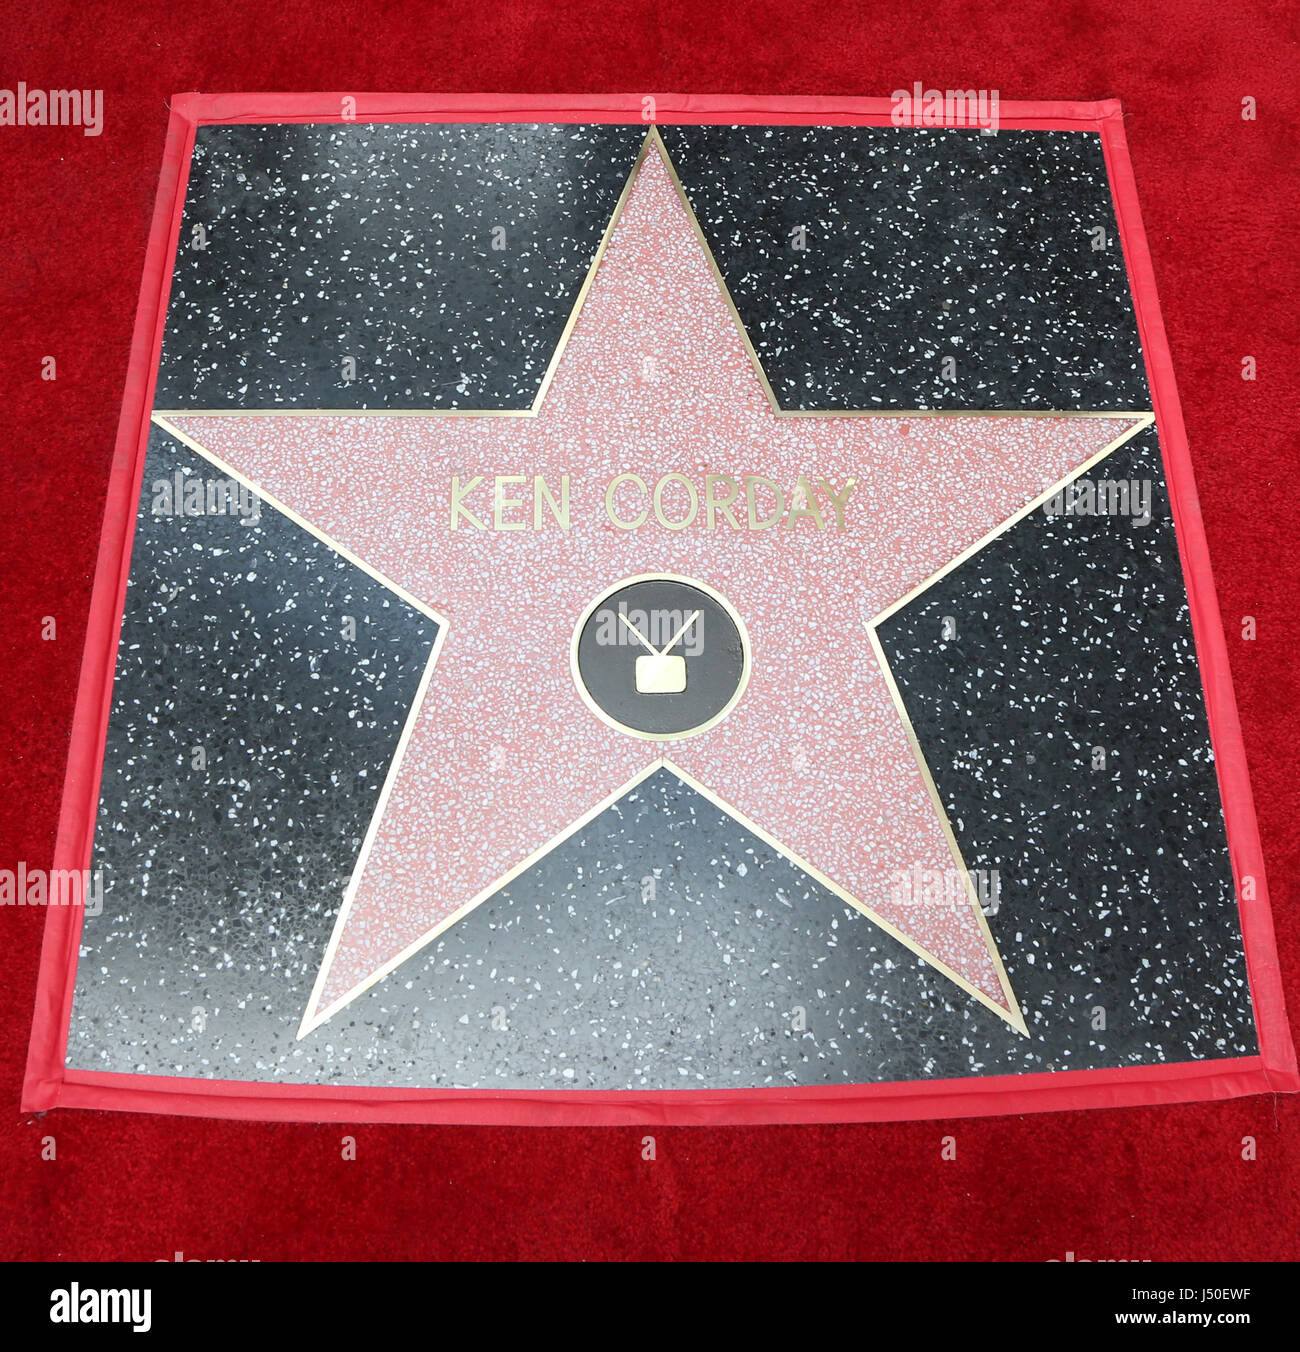 Hollywood, Ca 15. Mai 2017. Atmosphäre, bei Ken Corday geehrt mit Stern auf dem Hollywood Walk Of Fame auf dem Hollywood Walk Of Fame In Kalifornien am 15. Mai 2017. Bildnachweis: Fs/Medien Punch/Alamy Live-Nachrichten Stockfoto